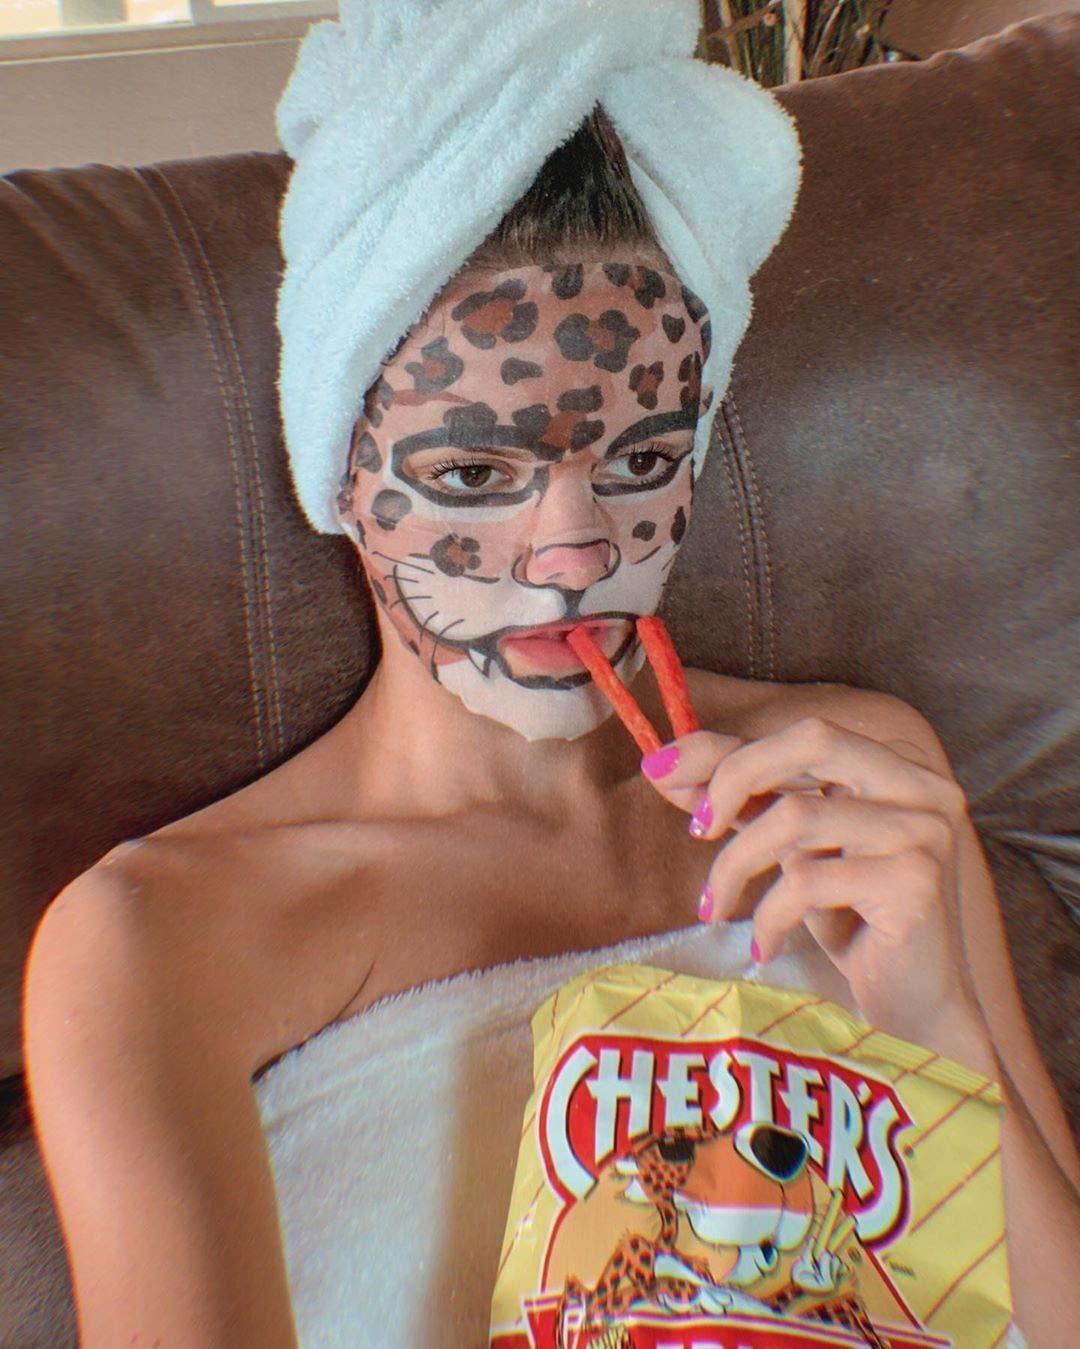 The cheetah character-themed sheet mask 